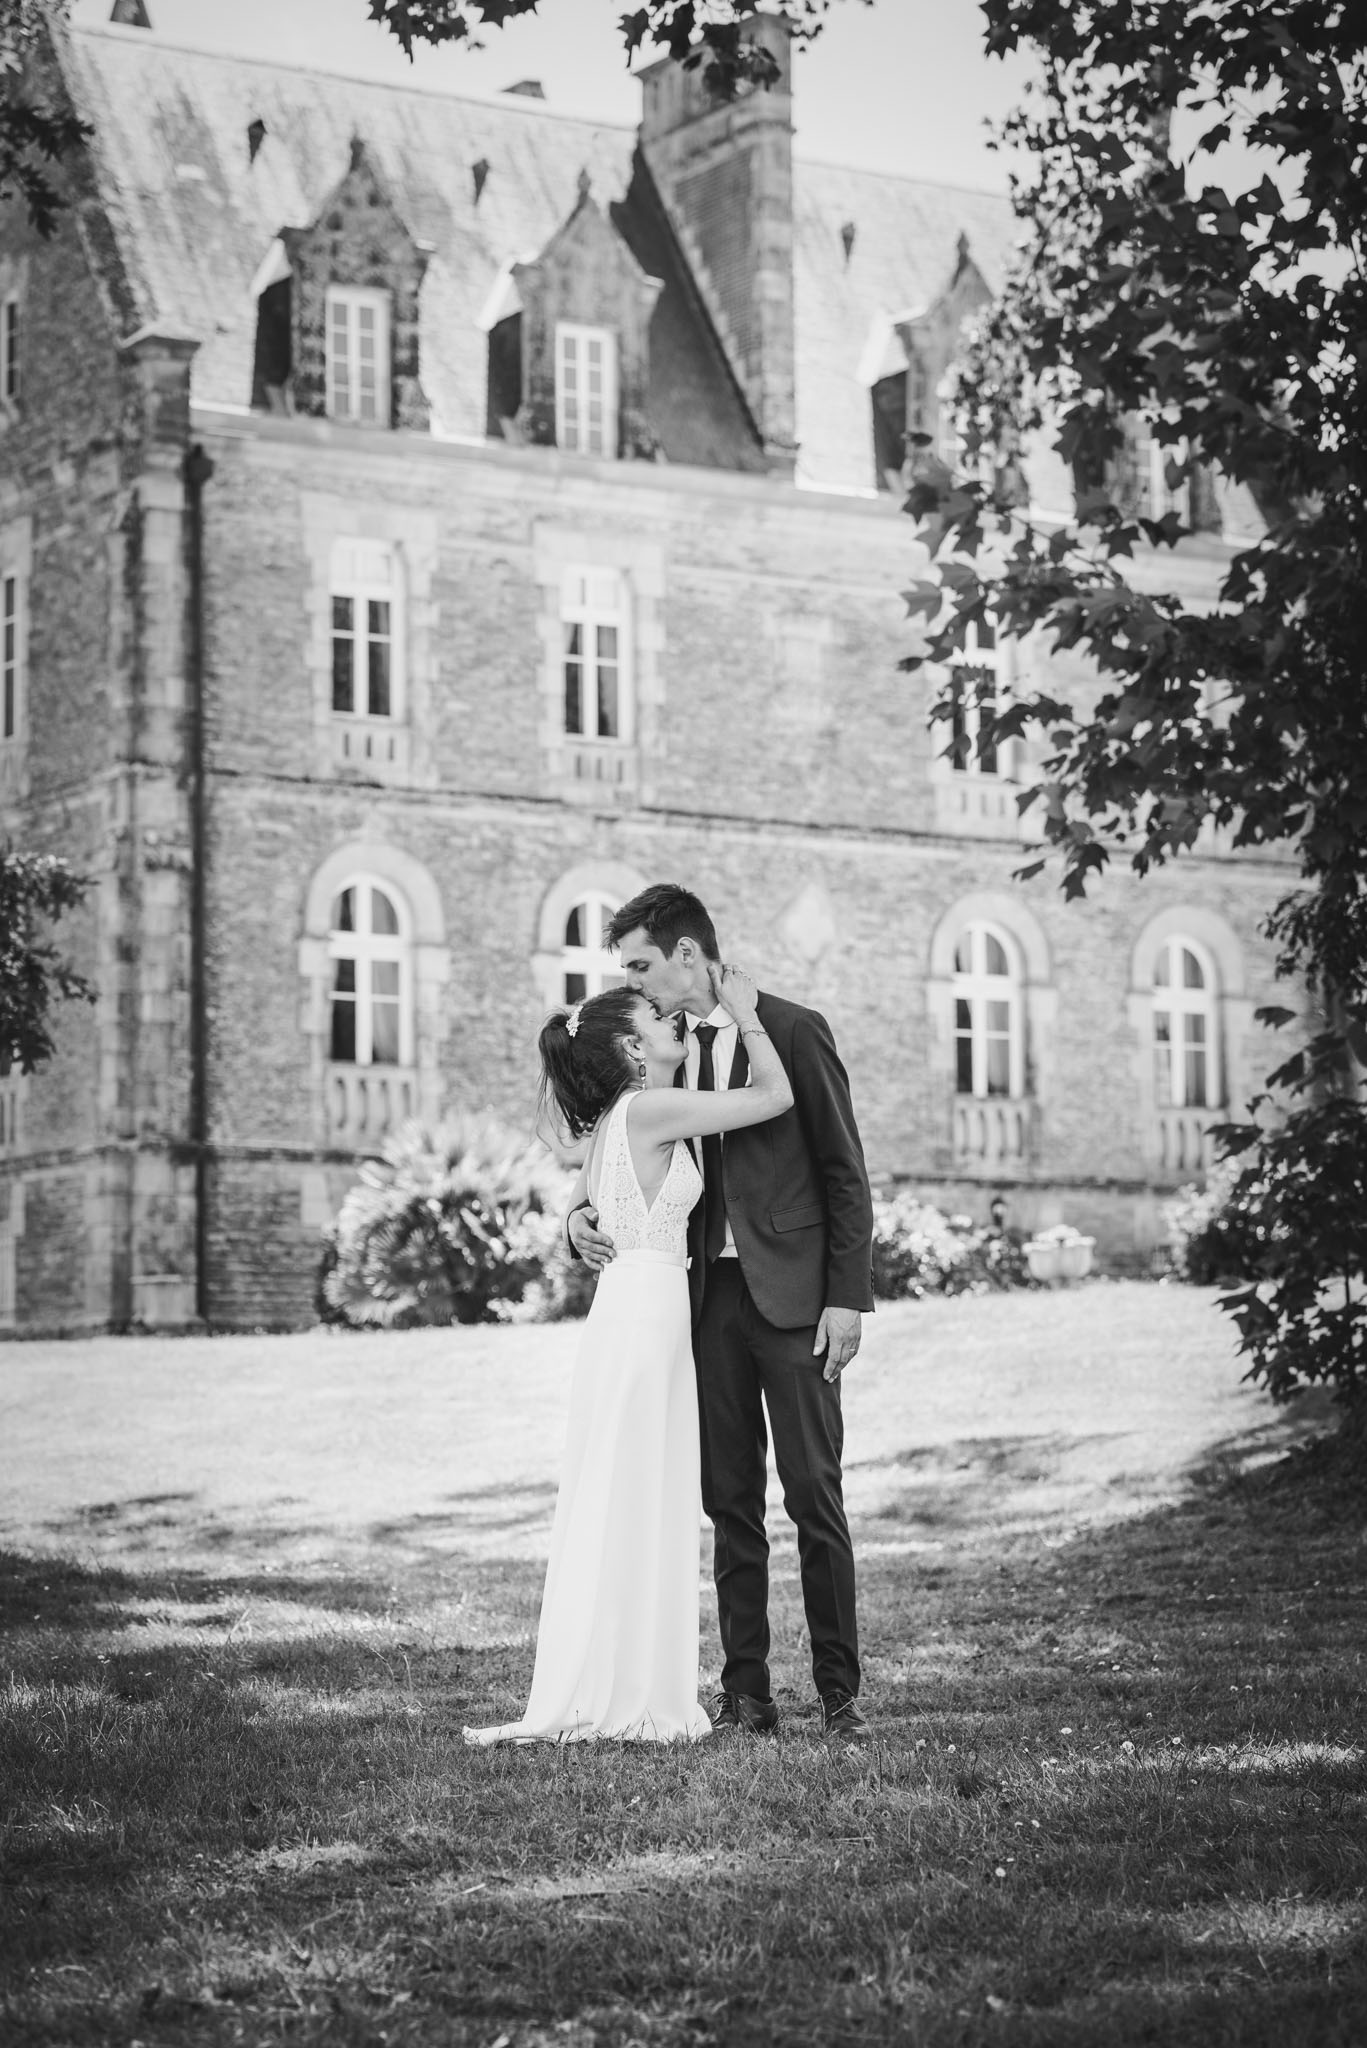 Marié faisant un bisou sur le front de la mariée devant un château, photo en noir et blanc